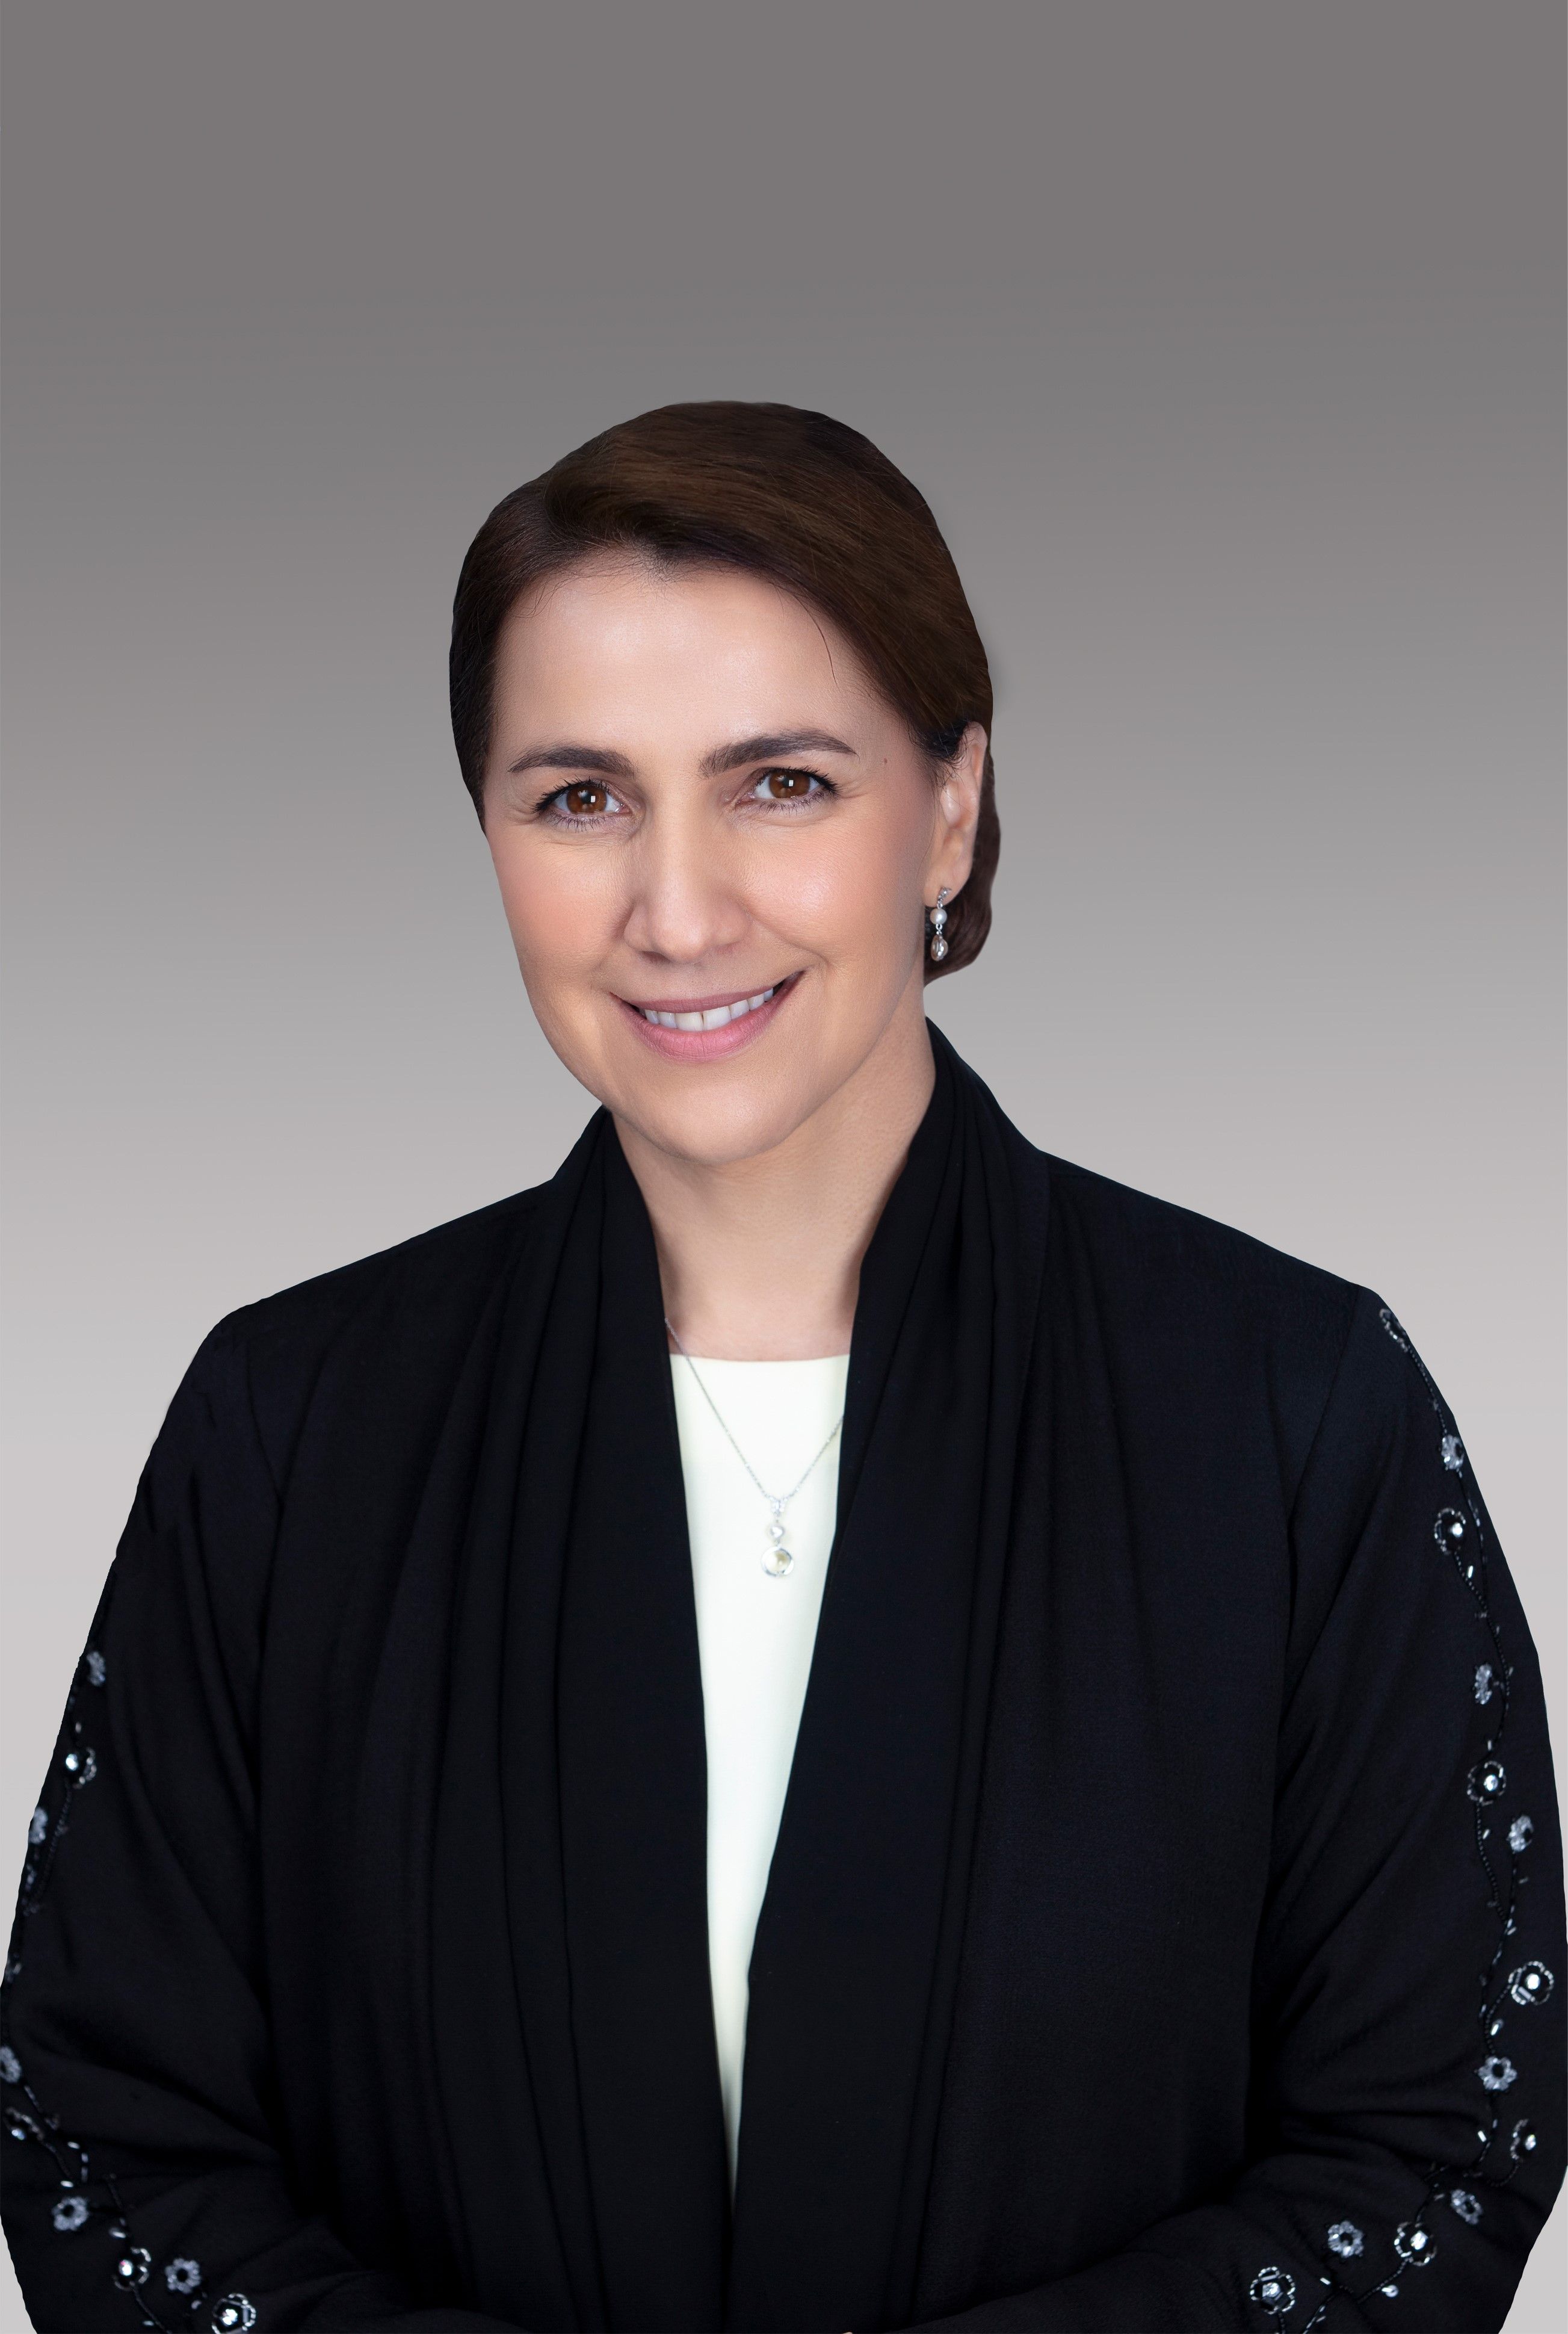 H.E. Mariam Al Mheiri